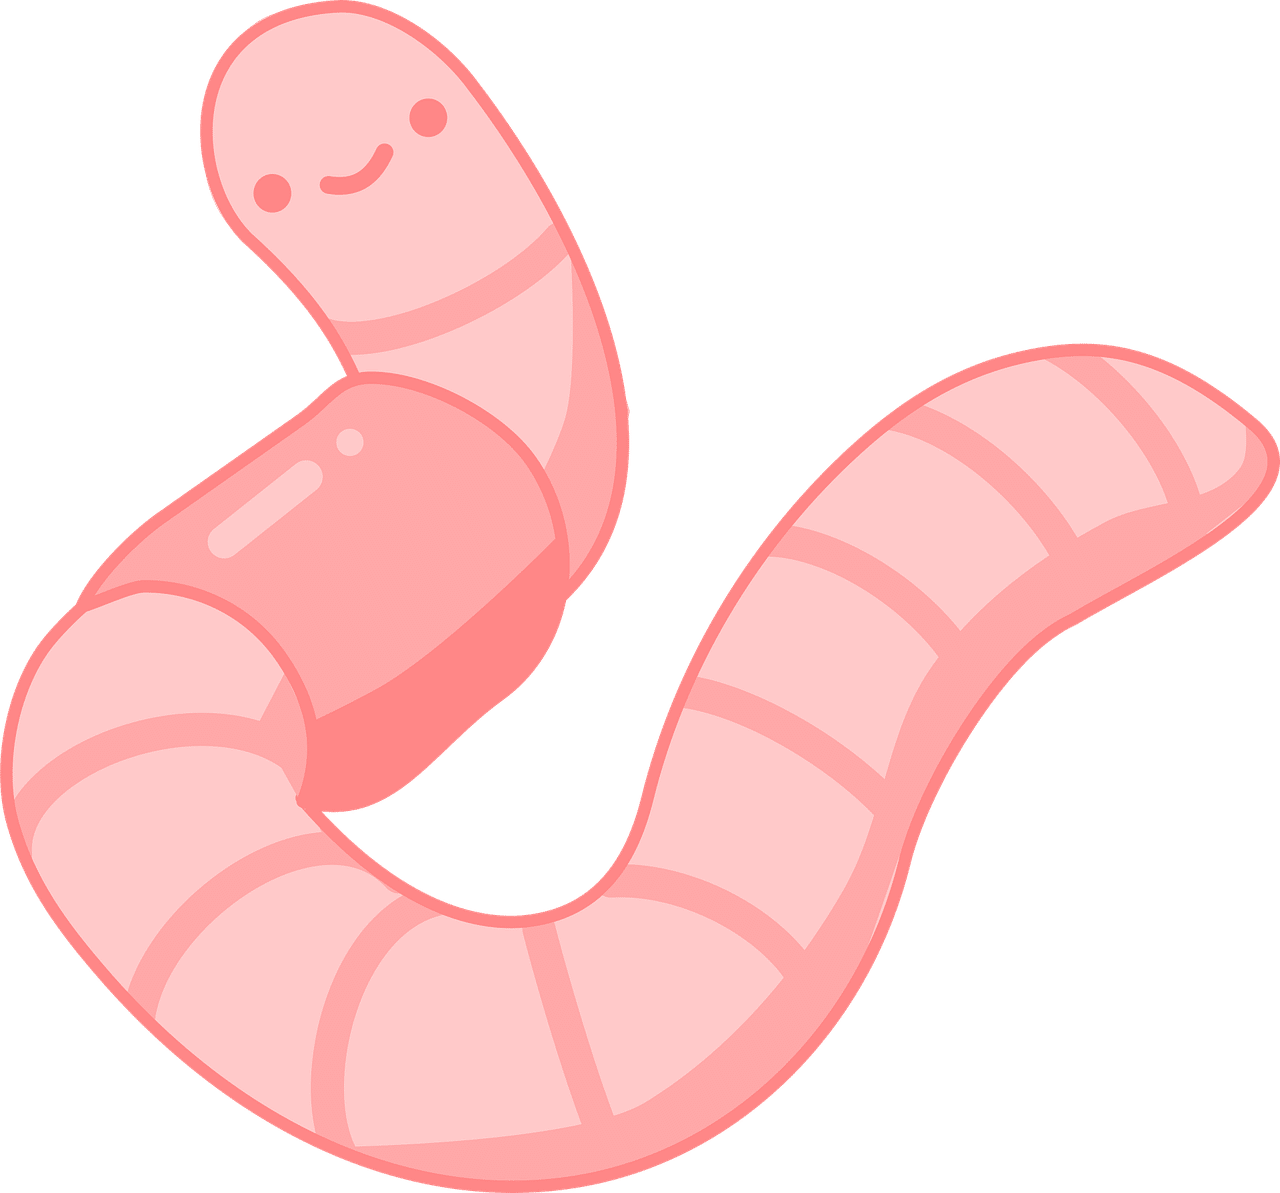 earthworm, worm, icon-5652736.jpg